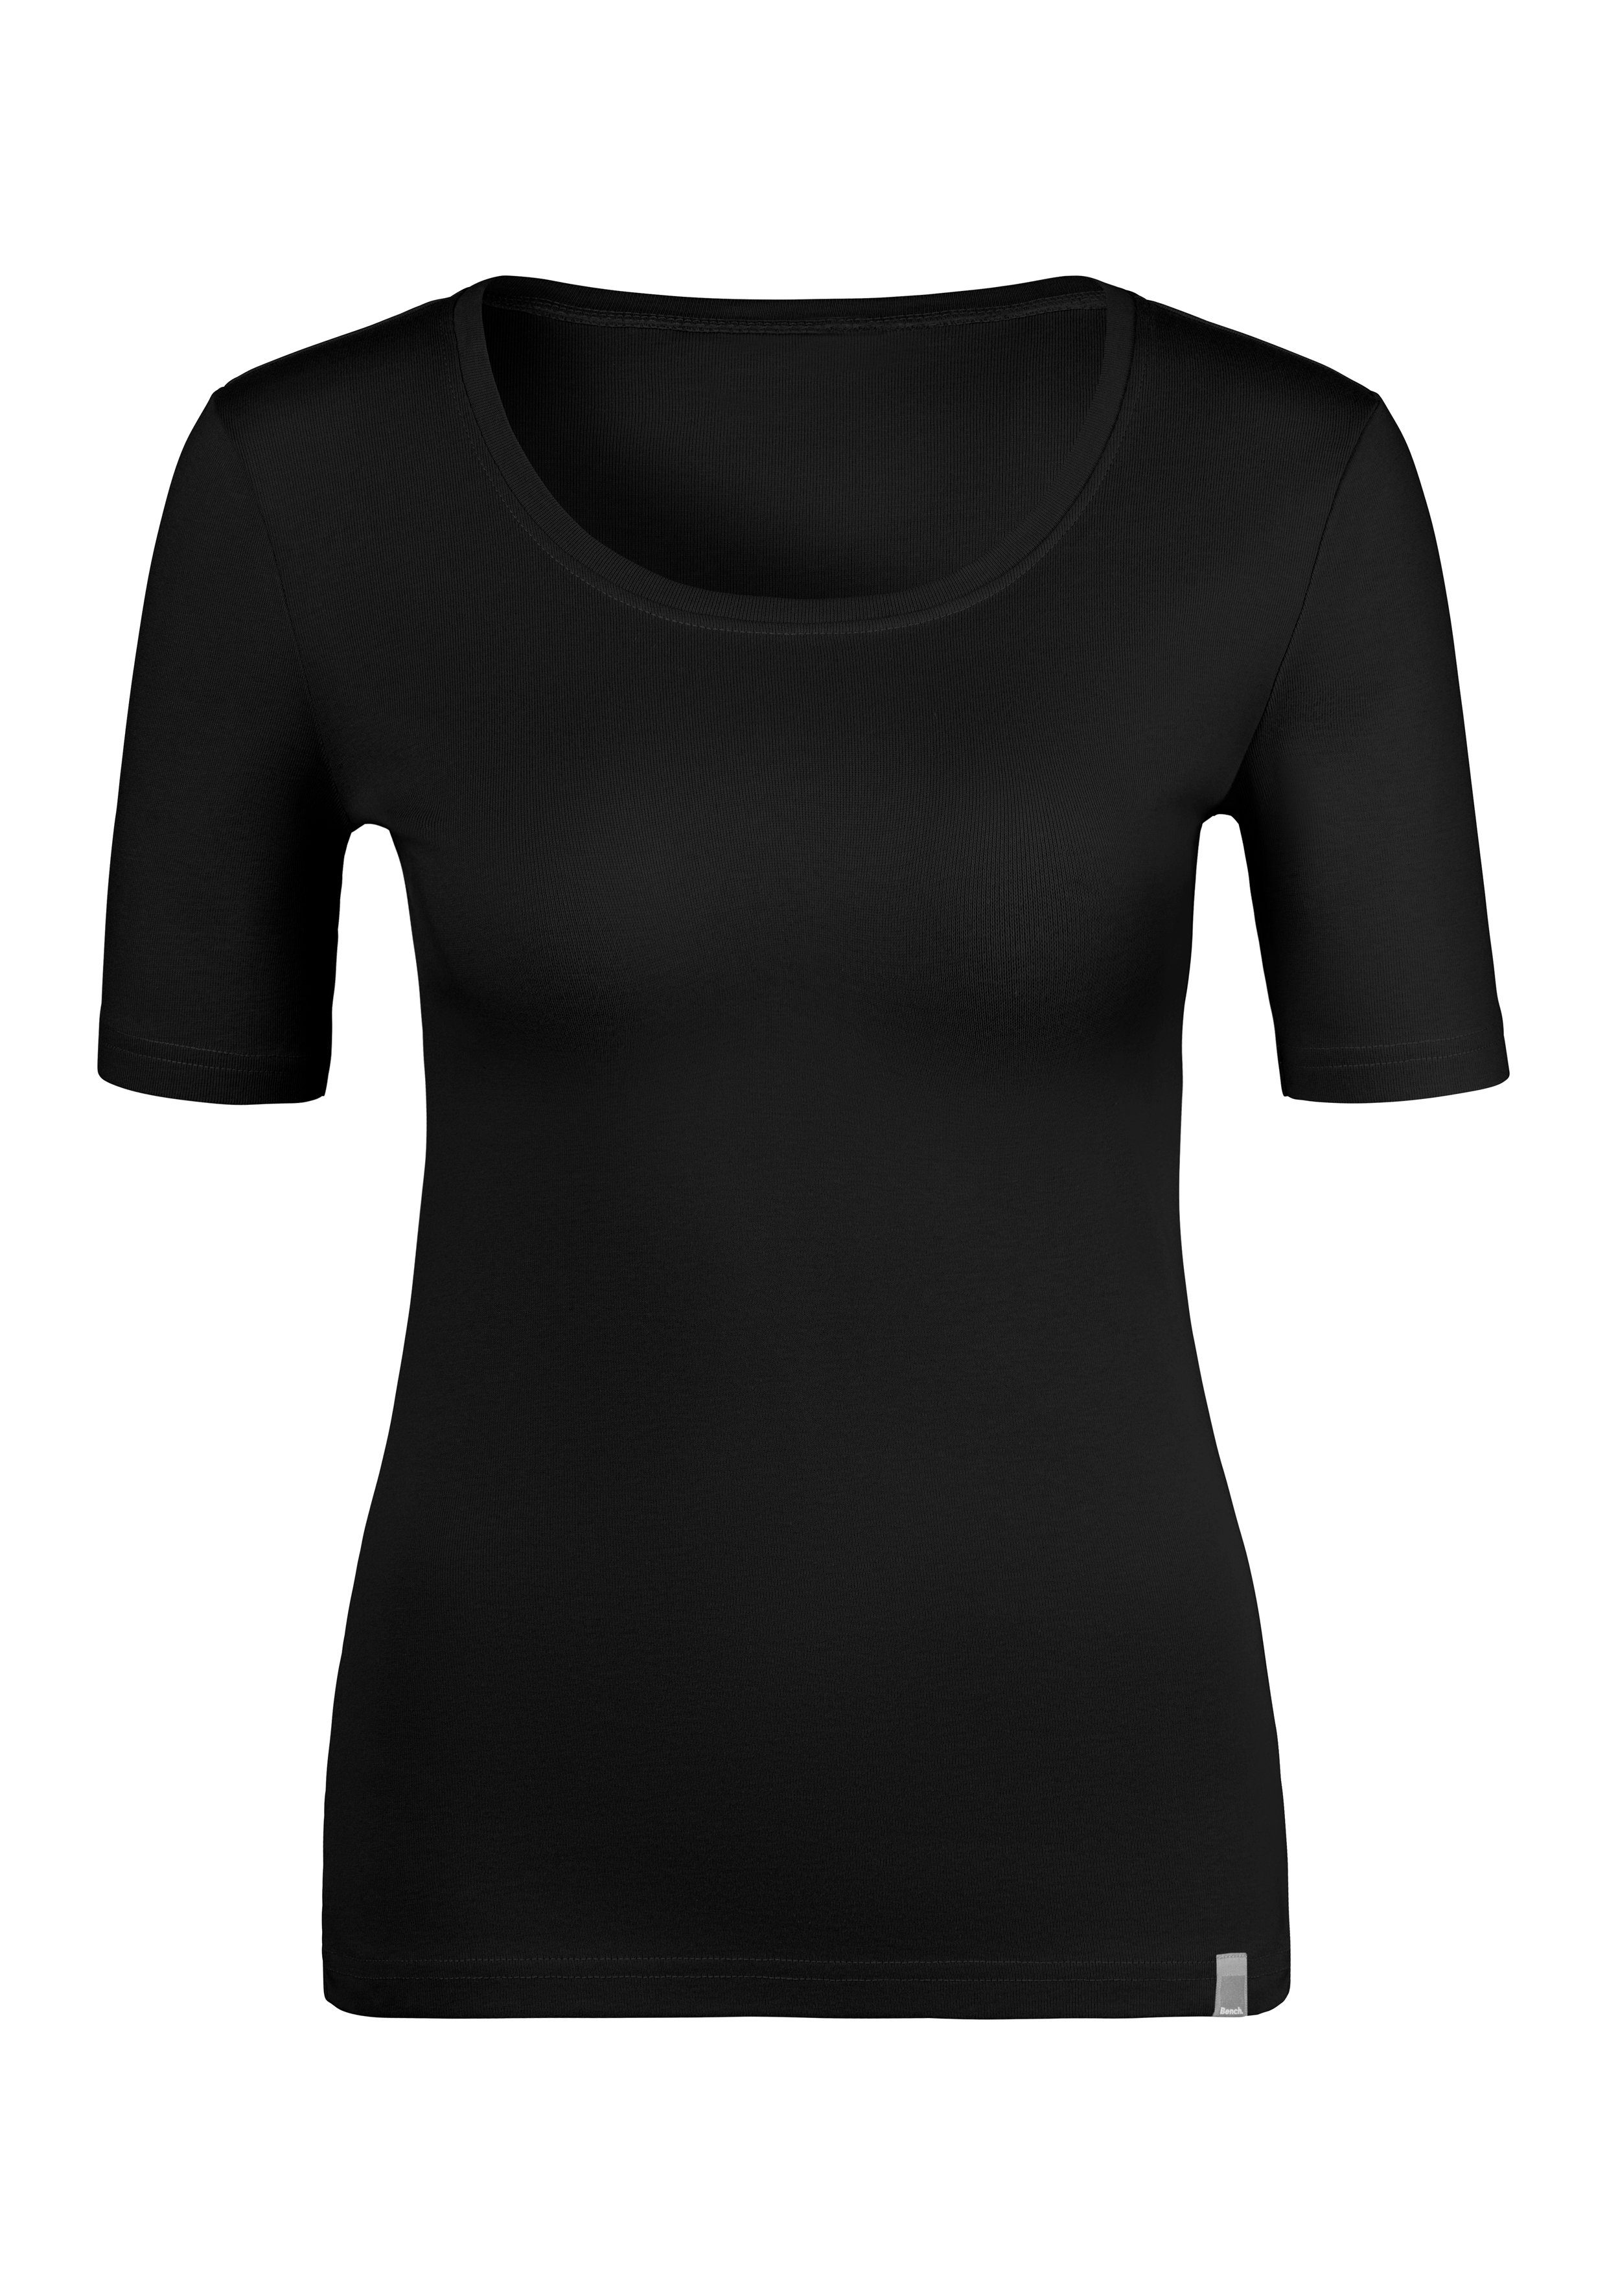 Unterziehshirt schwarz (2er-Pack) Feinripp-Qualität, weicher aus Bench. T-Shirt rose,